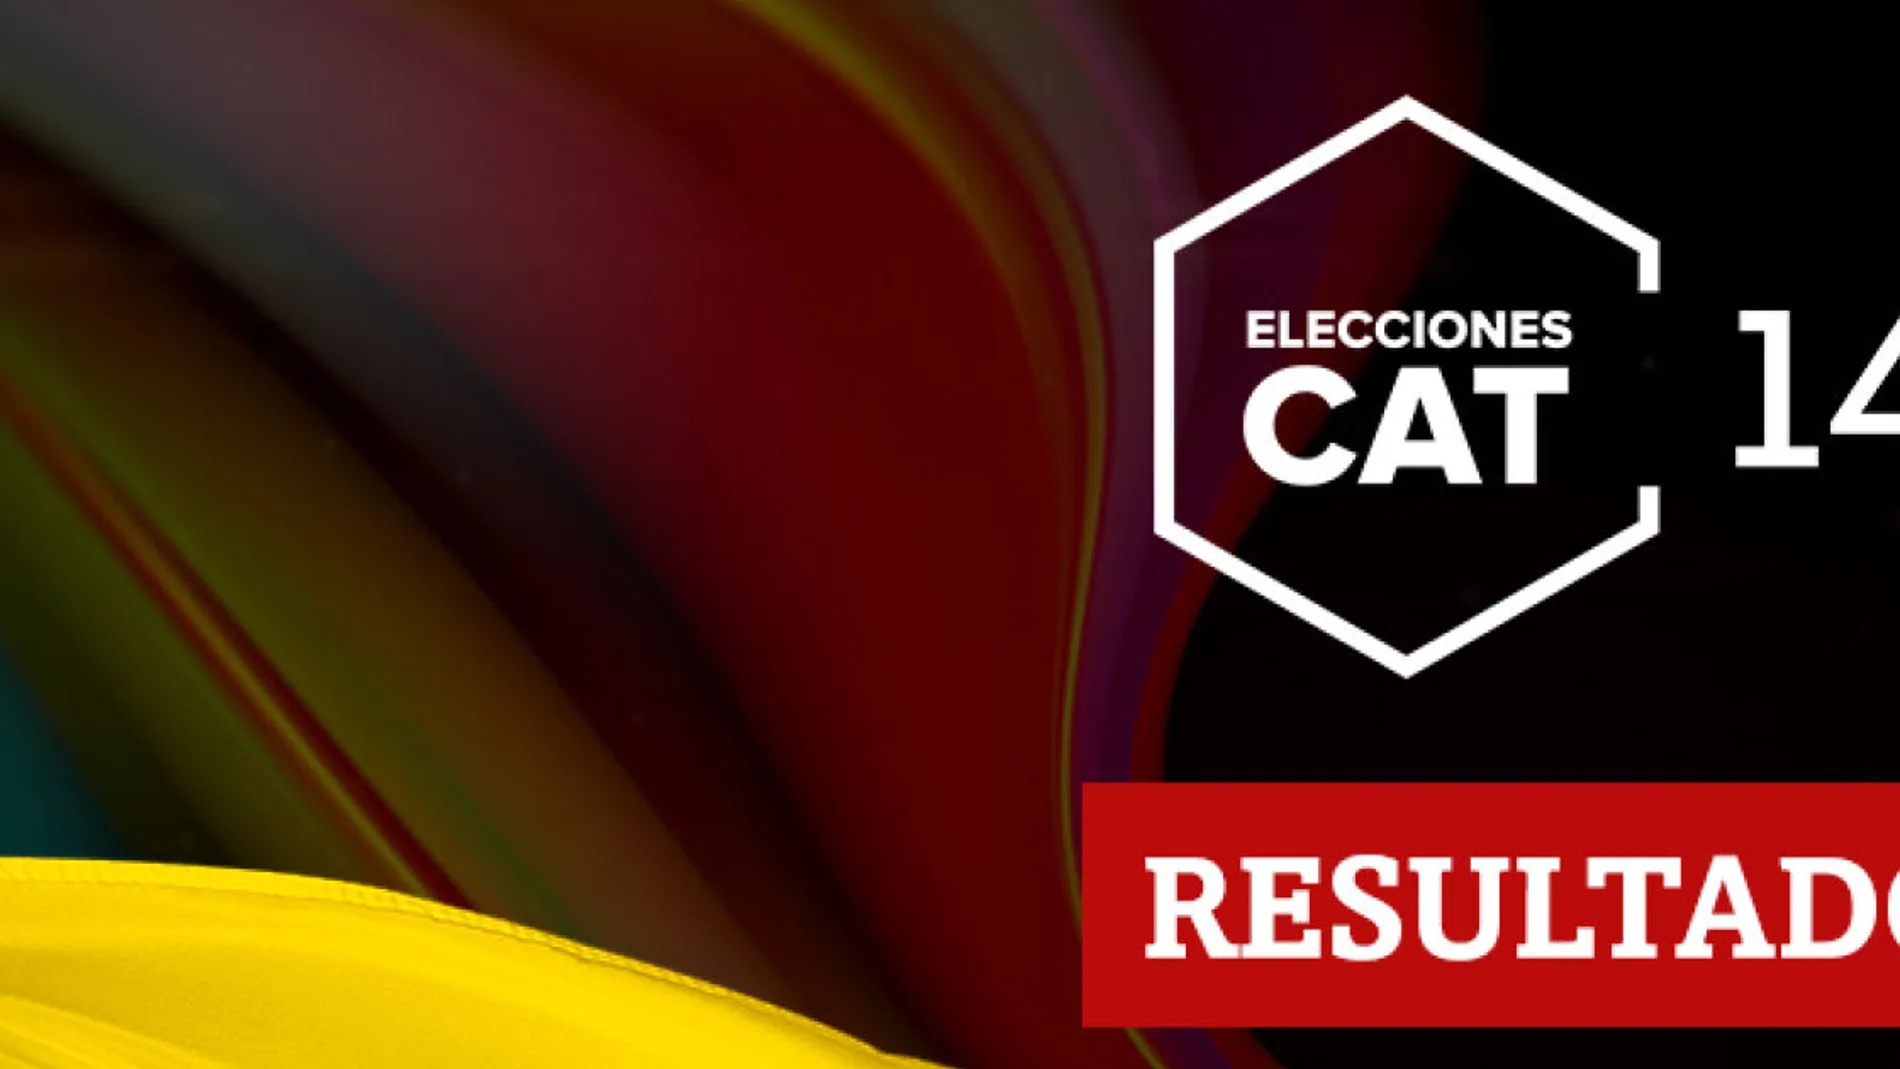 Resultados en La Pobla de Segur de las elecciones catalanas del 14F 2021